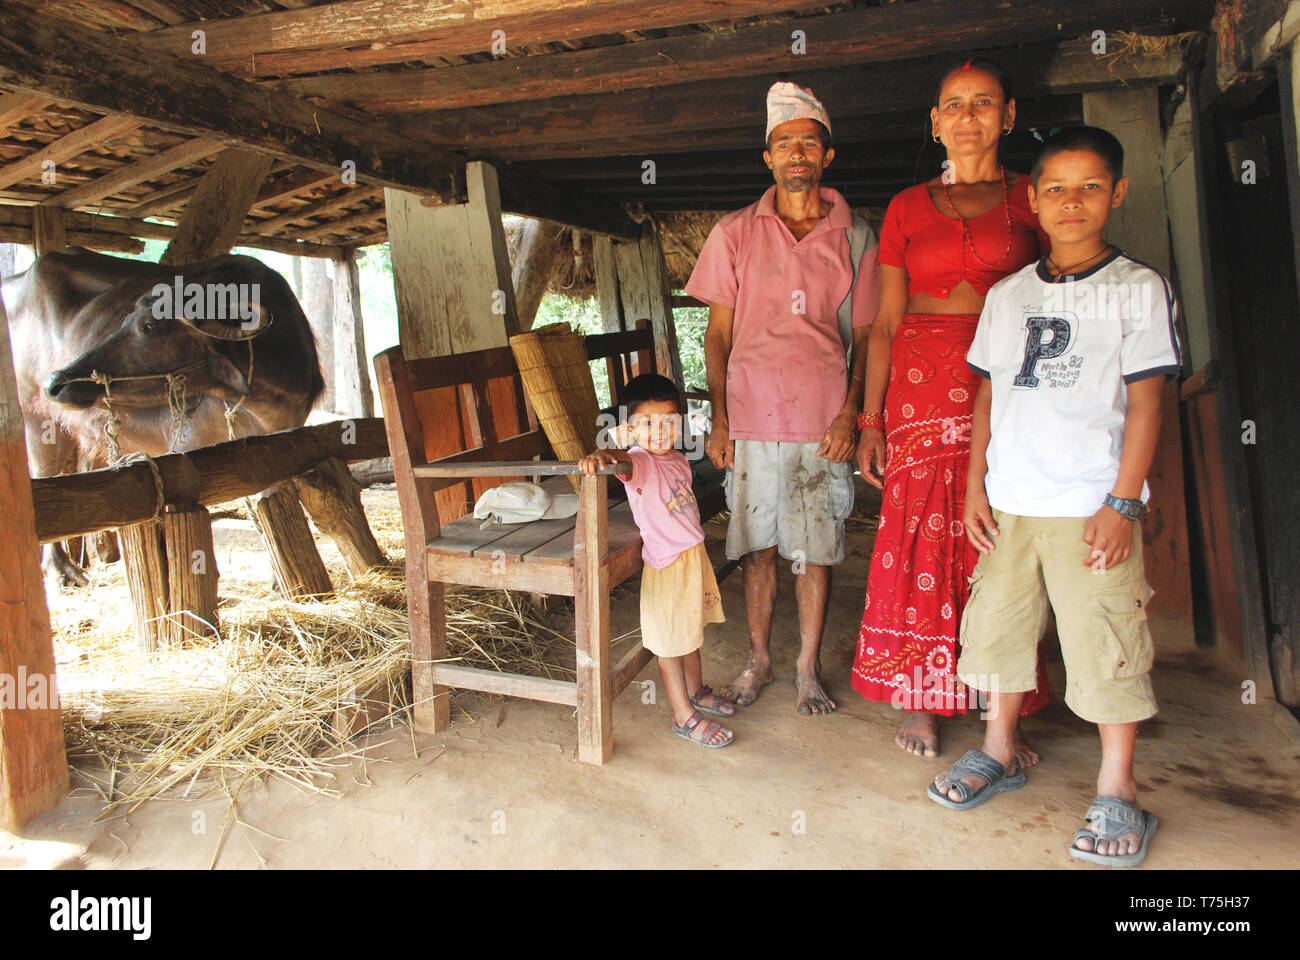 Avec la famille paysanne, Népal - groupe de personnes et de la vie rurale Banque D'Images